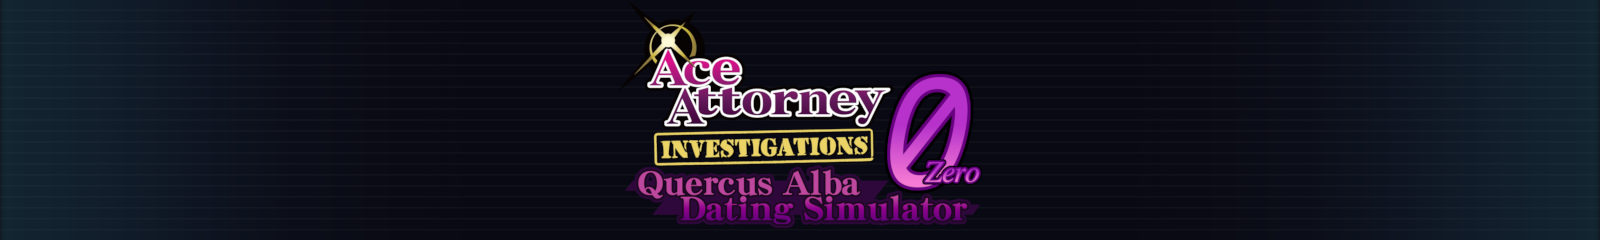 Ace Attorney Investigations 0: Quercus Alba Dating Simulator